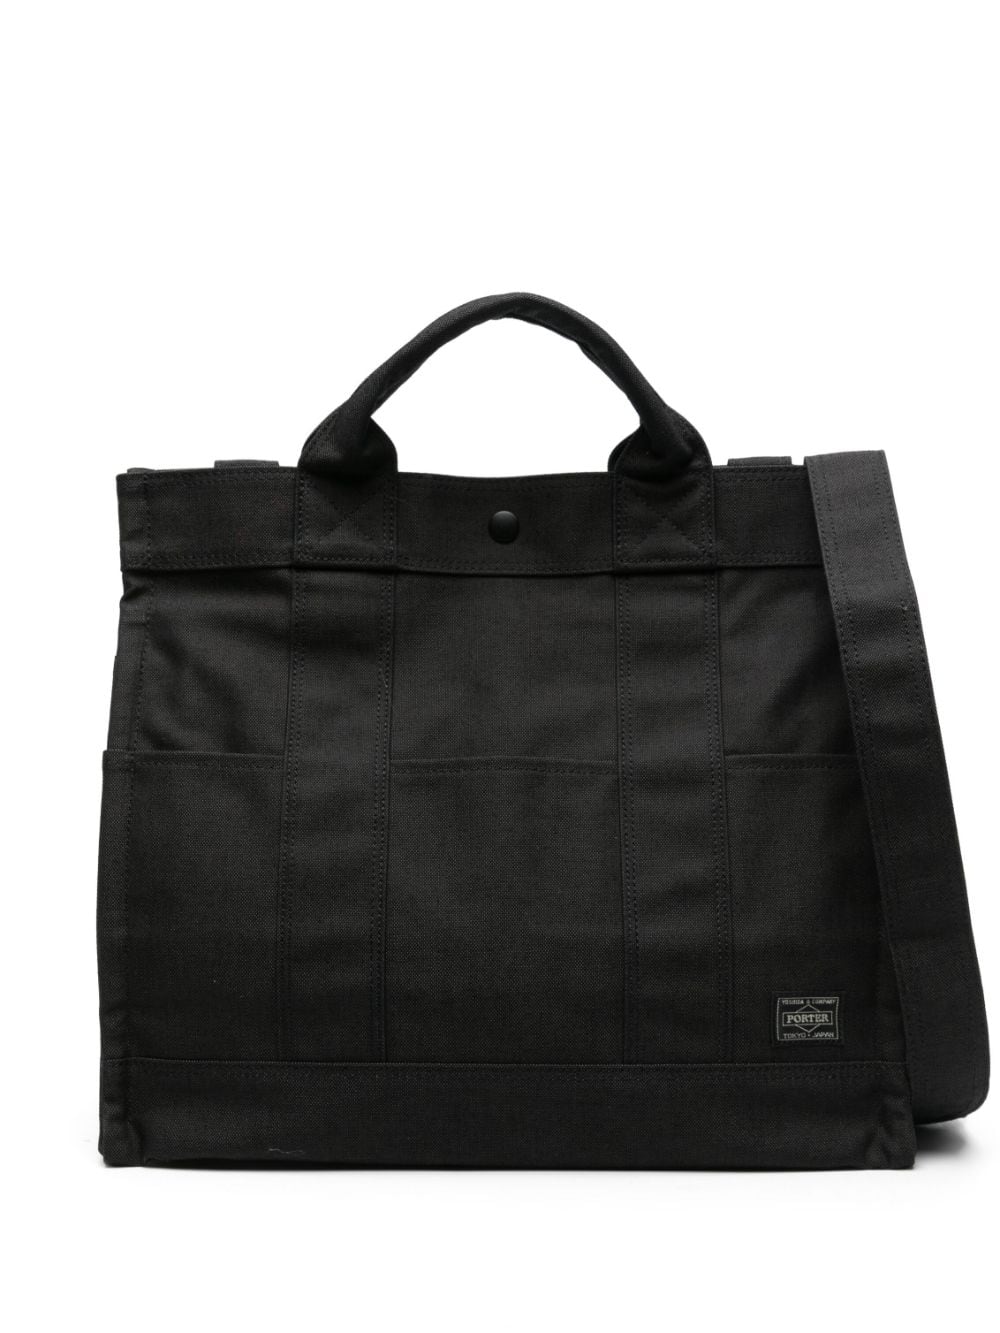 Porter-yoshida & Co Senses Tote Bag In Black